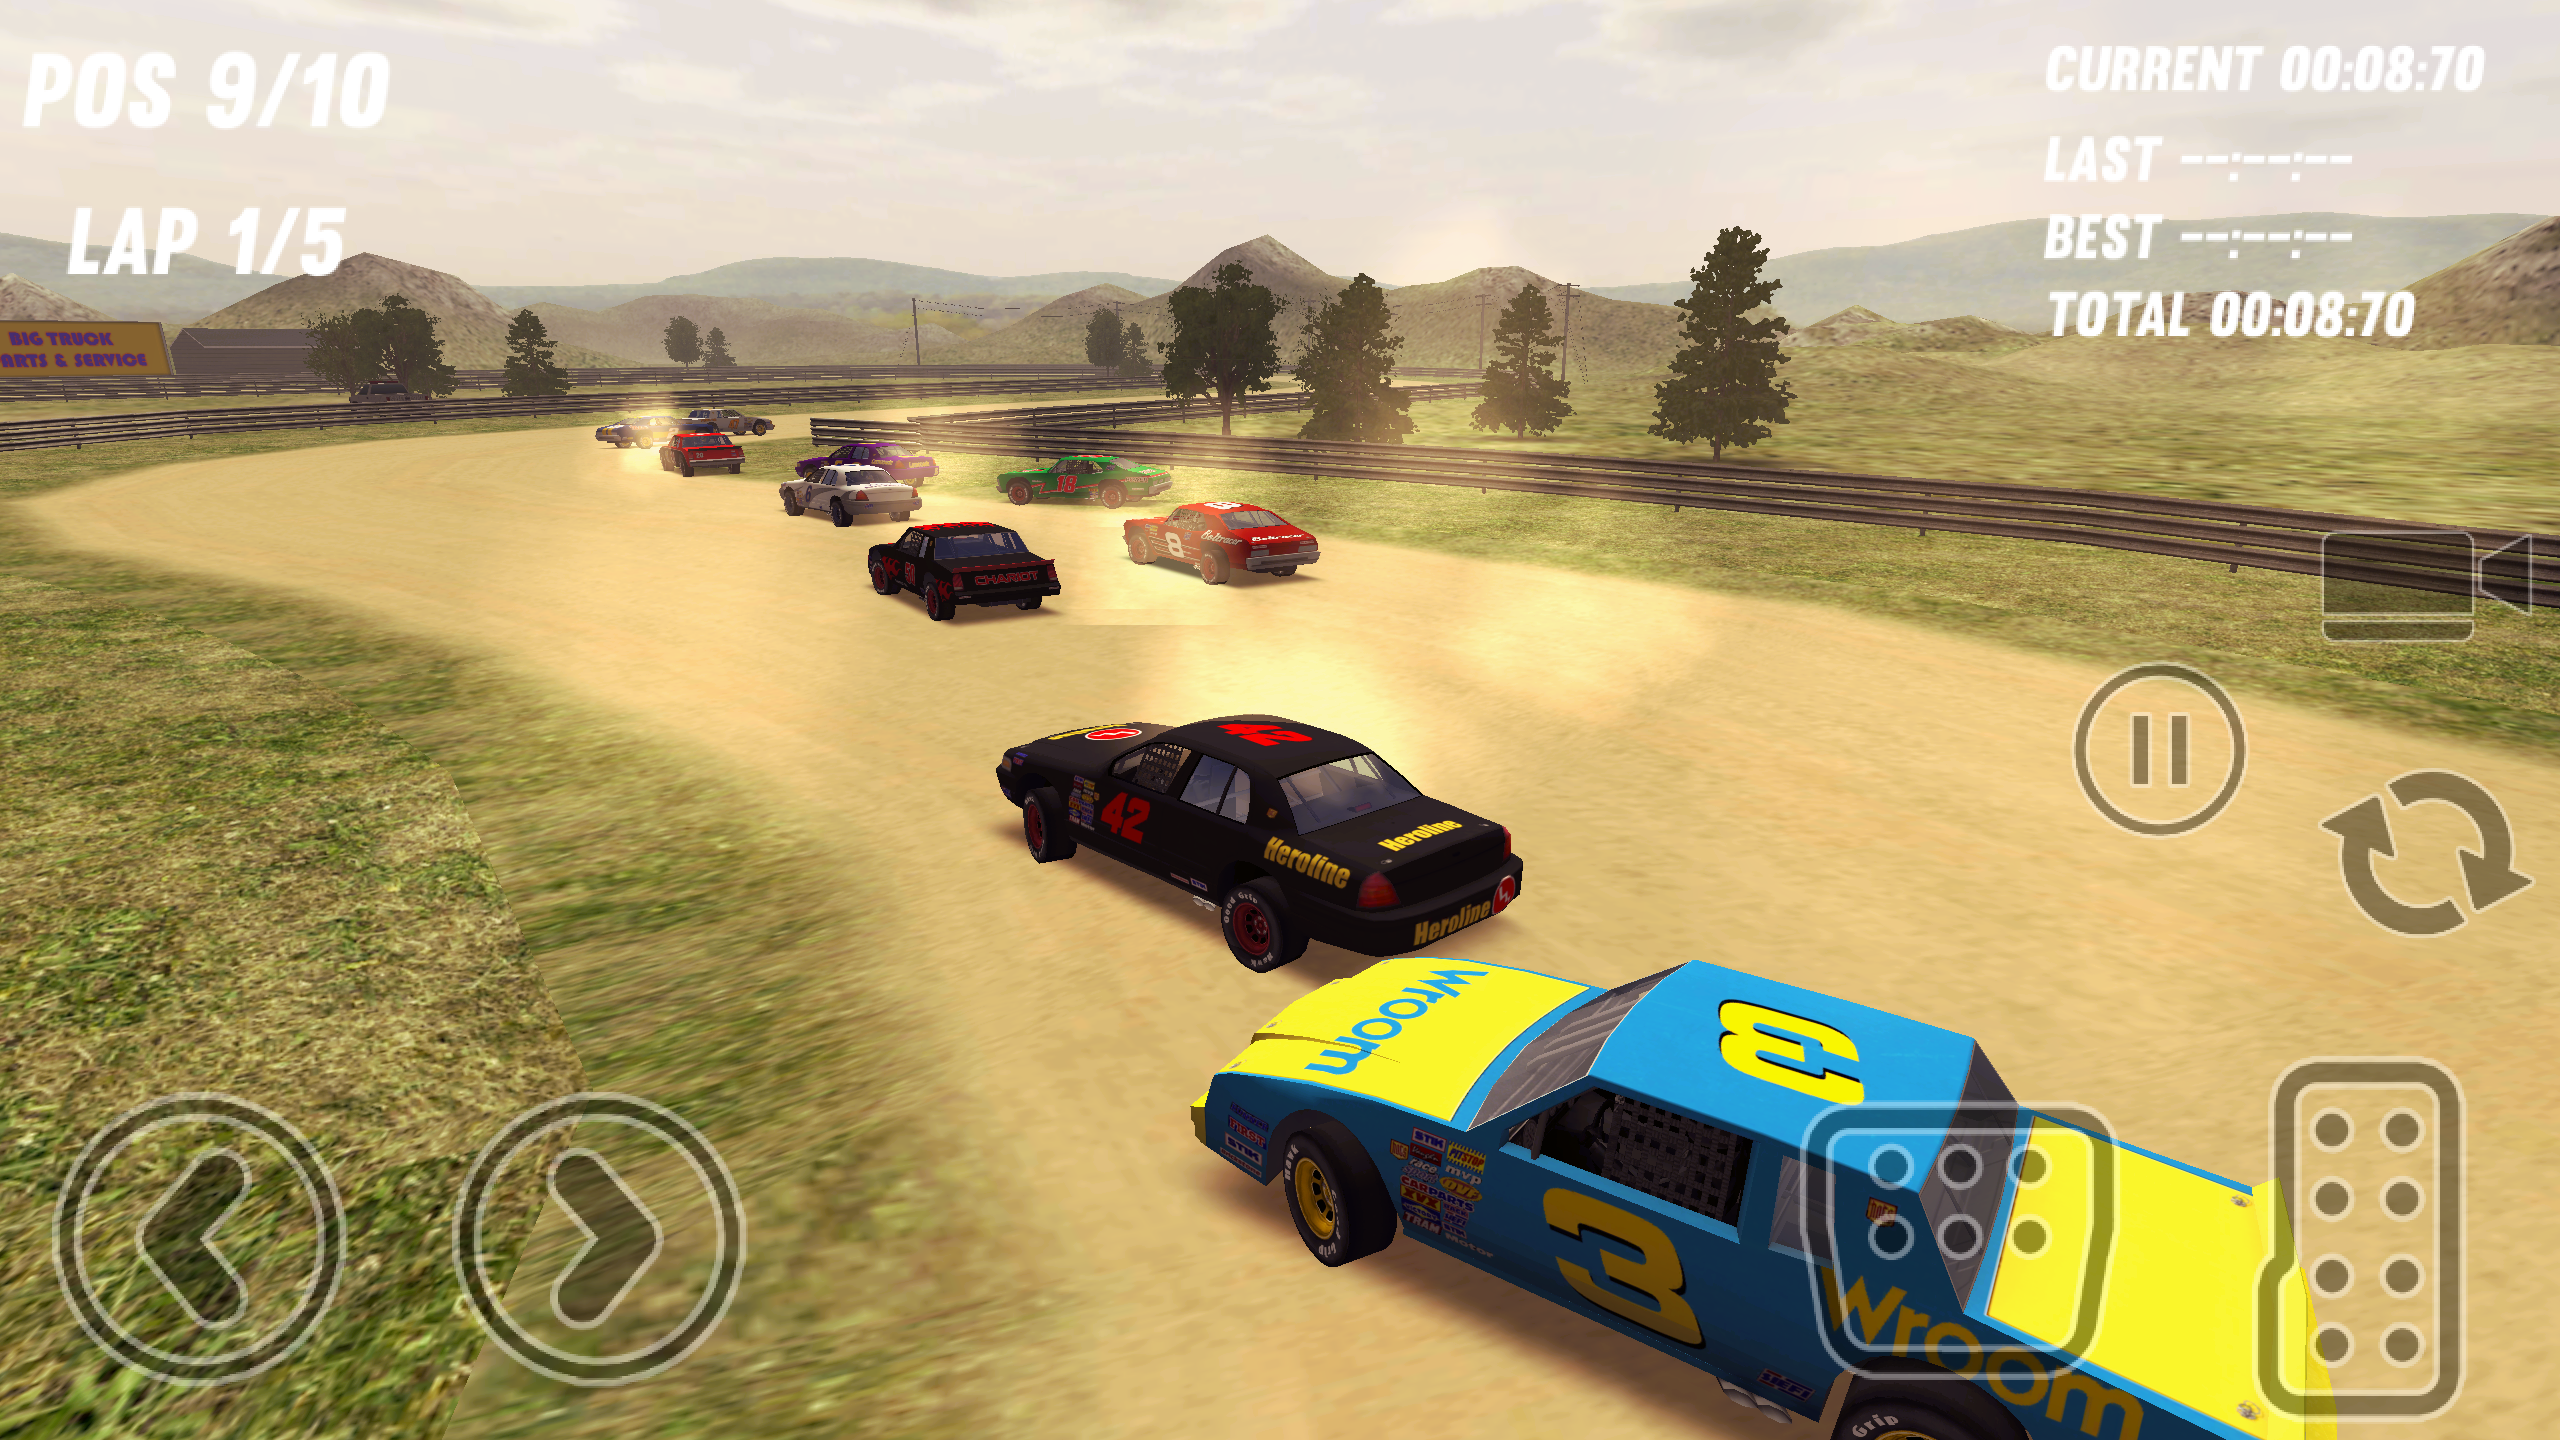 Screenshot 1 of Dirt Track Stock Cars 1.0.3